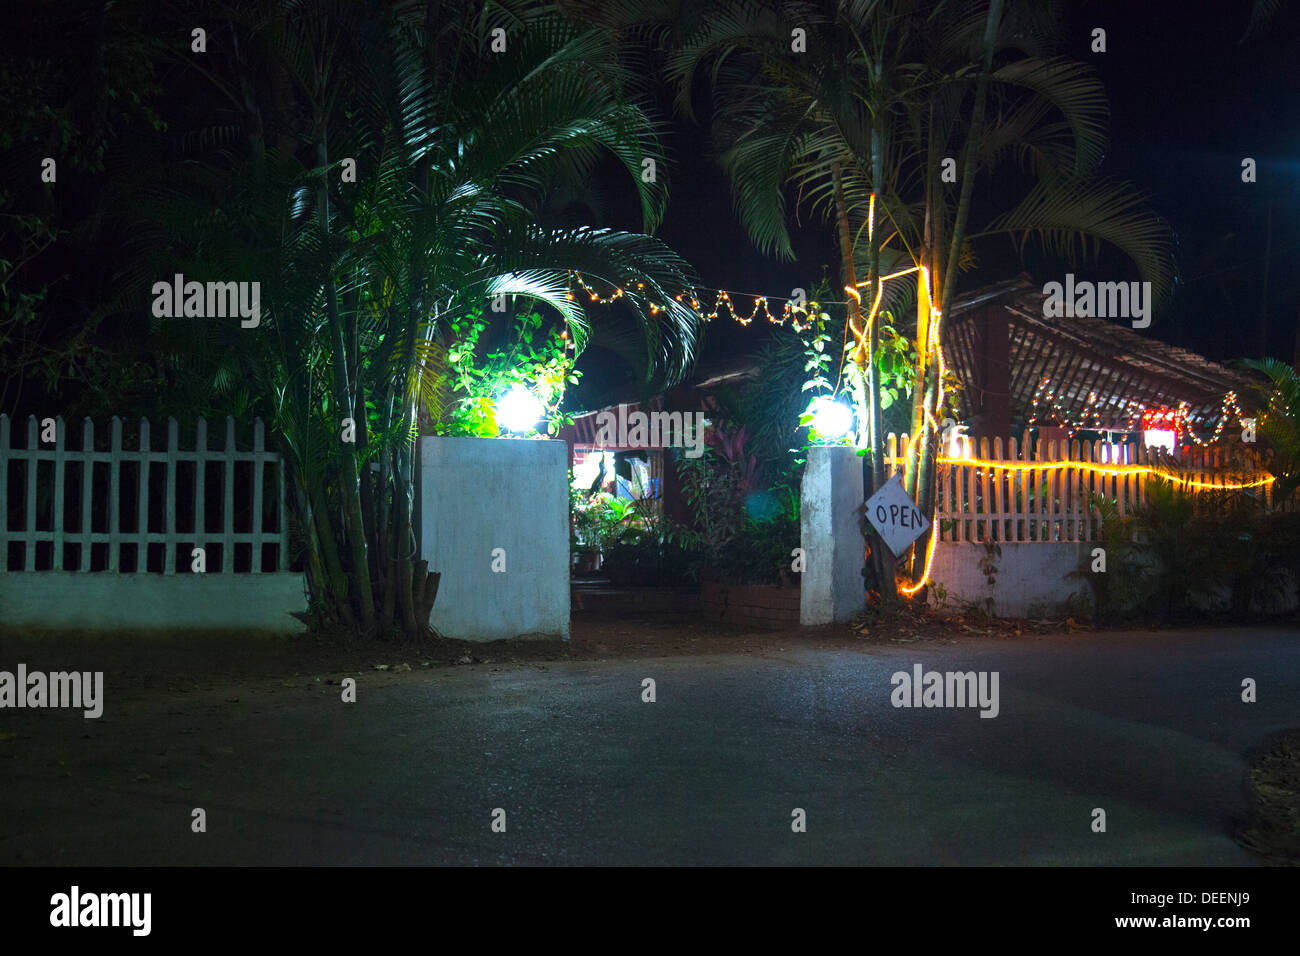 Entrance of a restaurant lit up at night, Papa Joe's Restaurant, Panaji, Goa, India Stock Photo